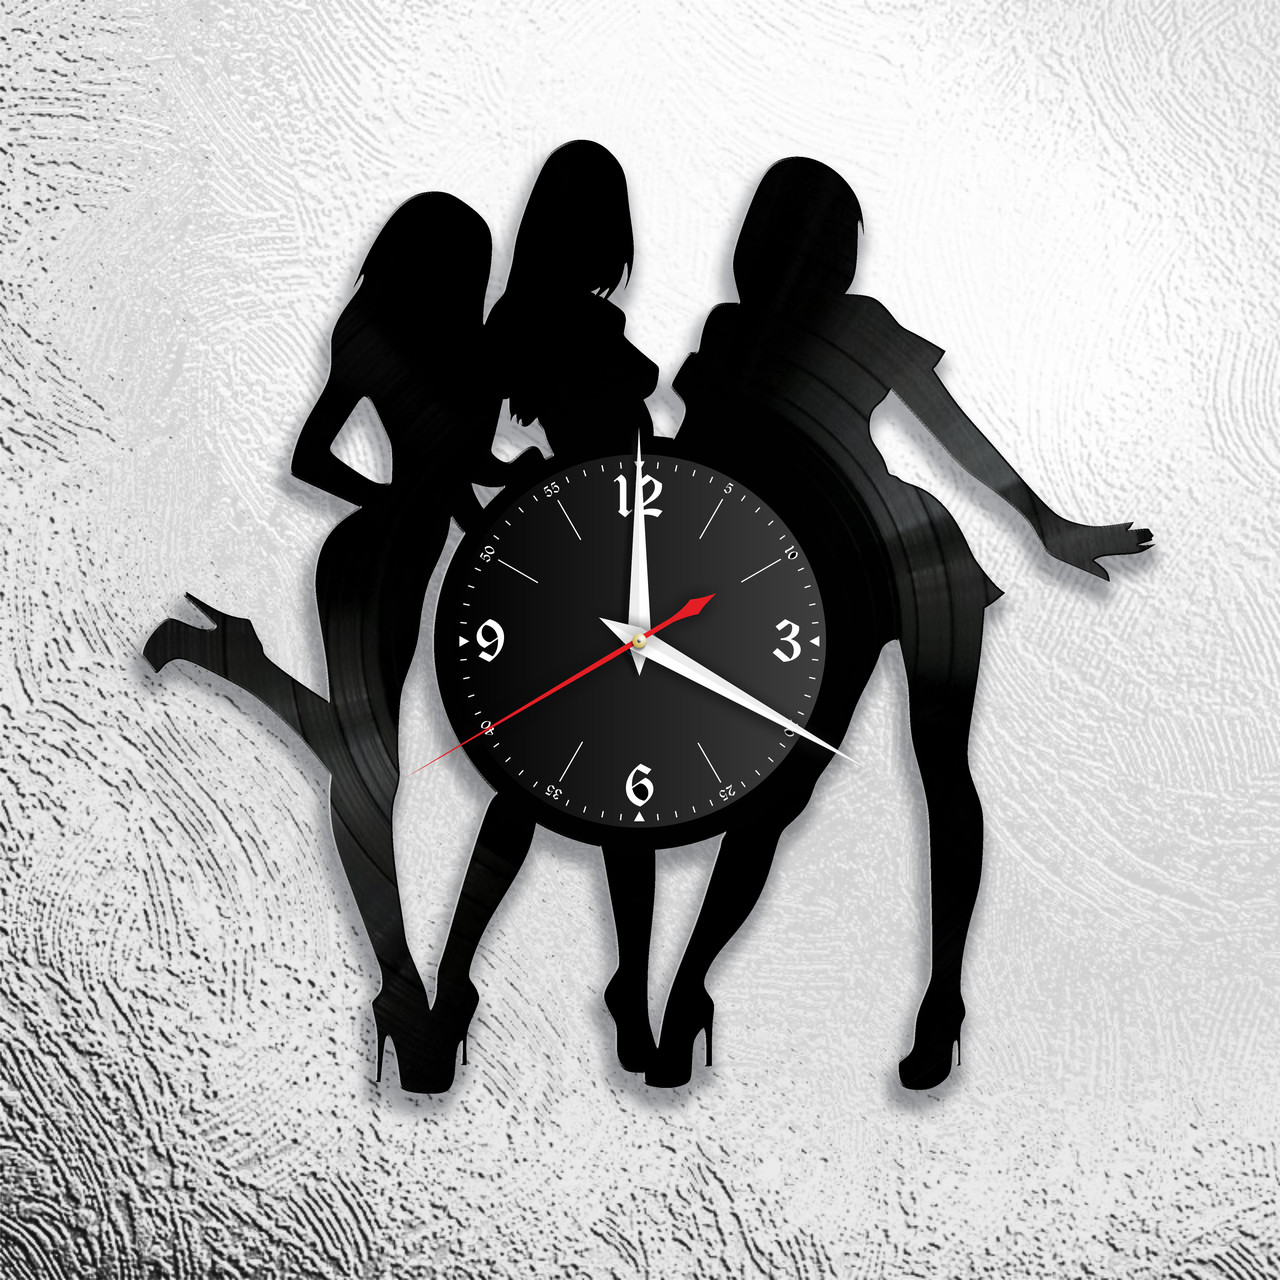 Оригинальные часы из виниловых пластинок "3 девушки" версия 1, фото 1